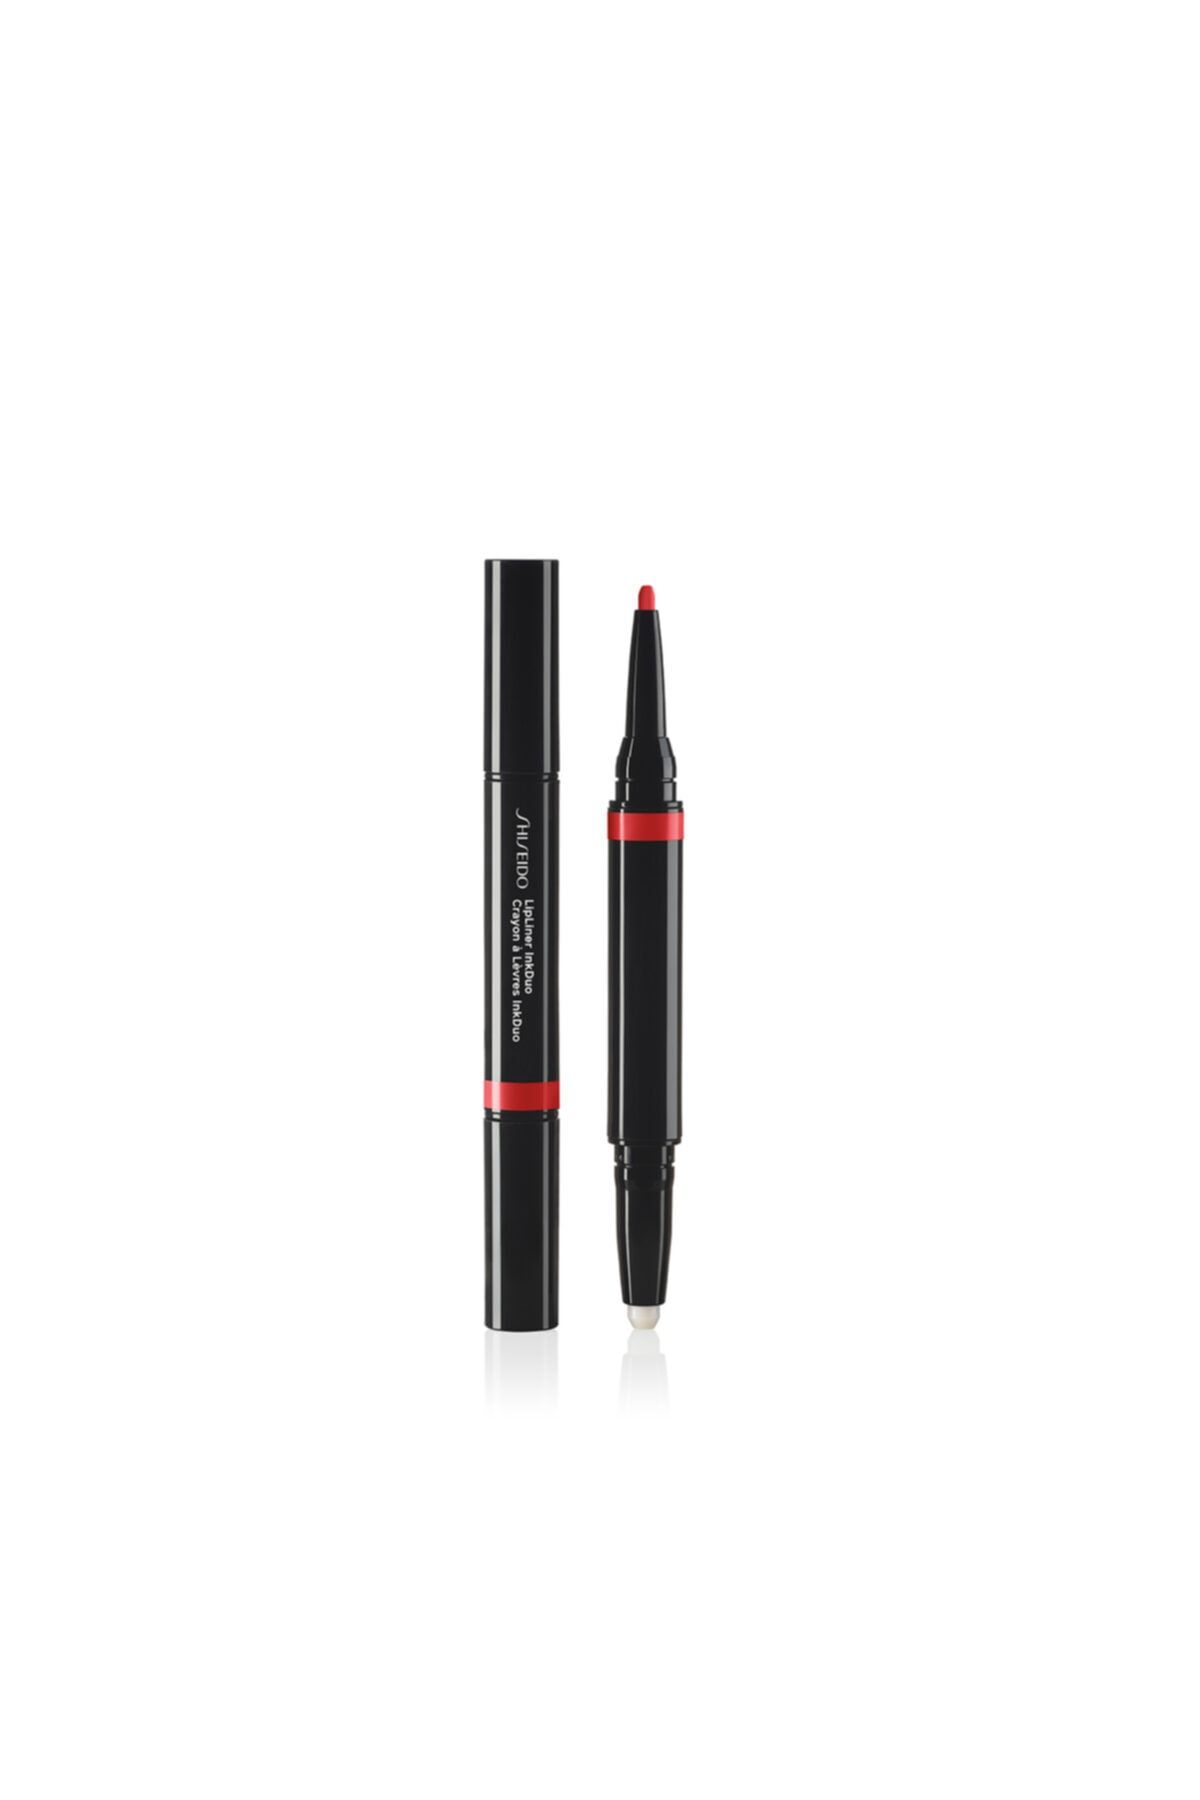 Shiseido Lipliner Inkduo 07 -2si1 Arada Dudak Bazı Ve Kontür Kalemi